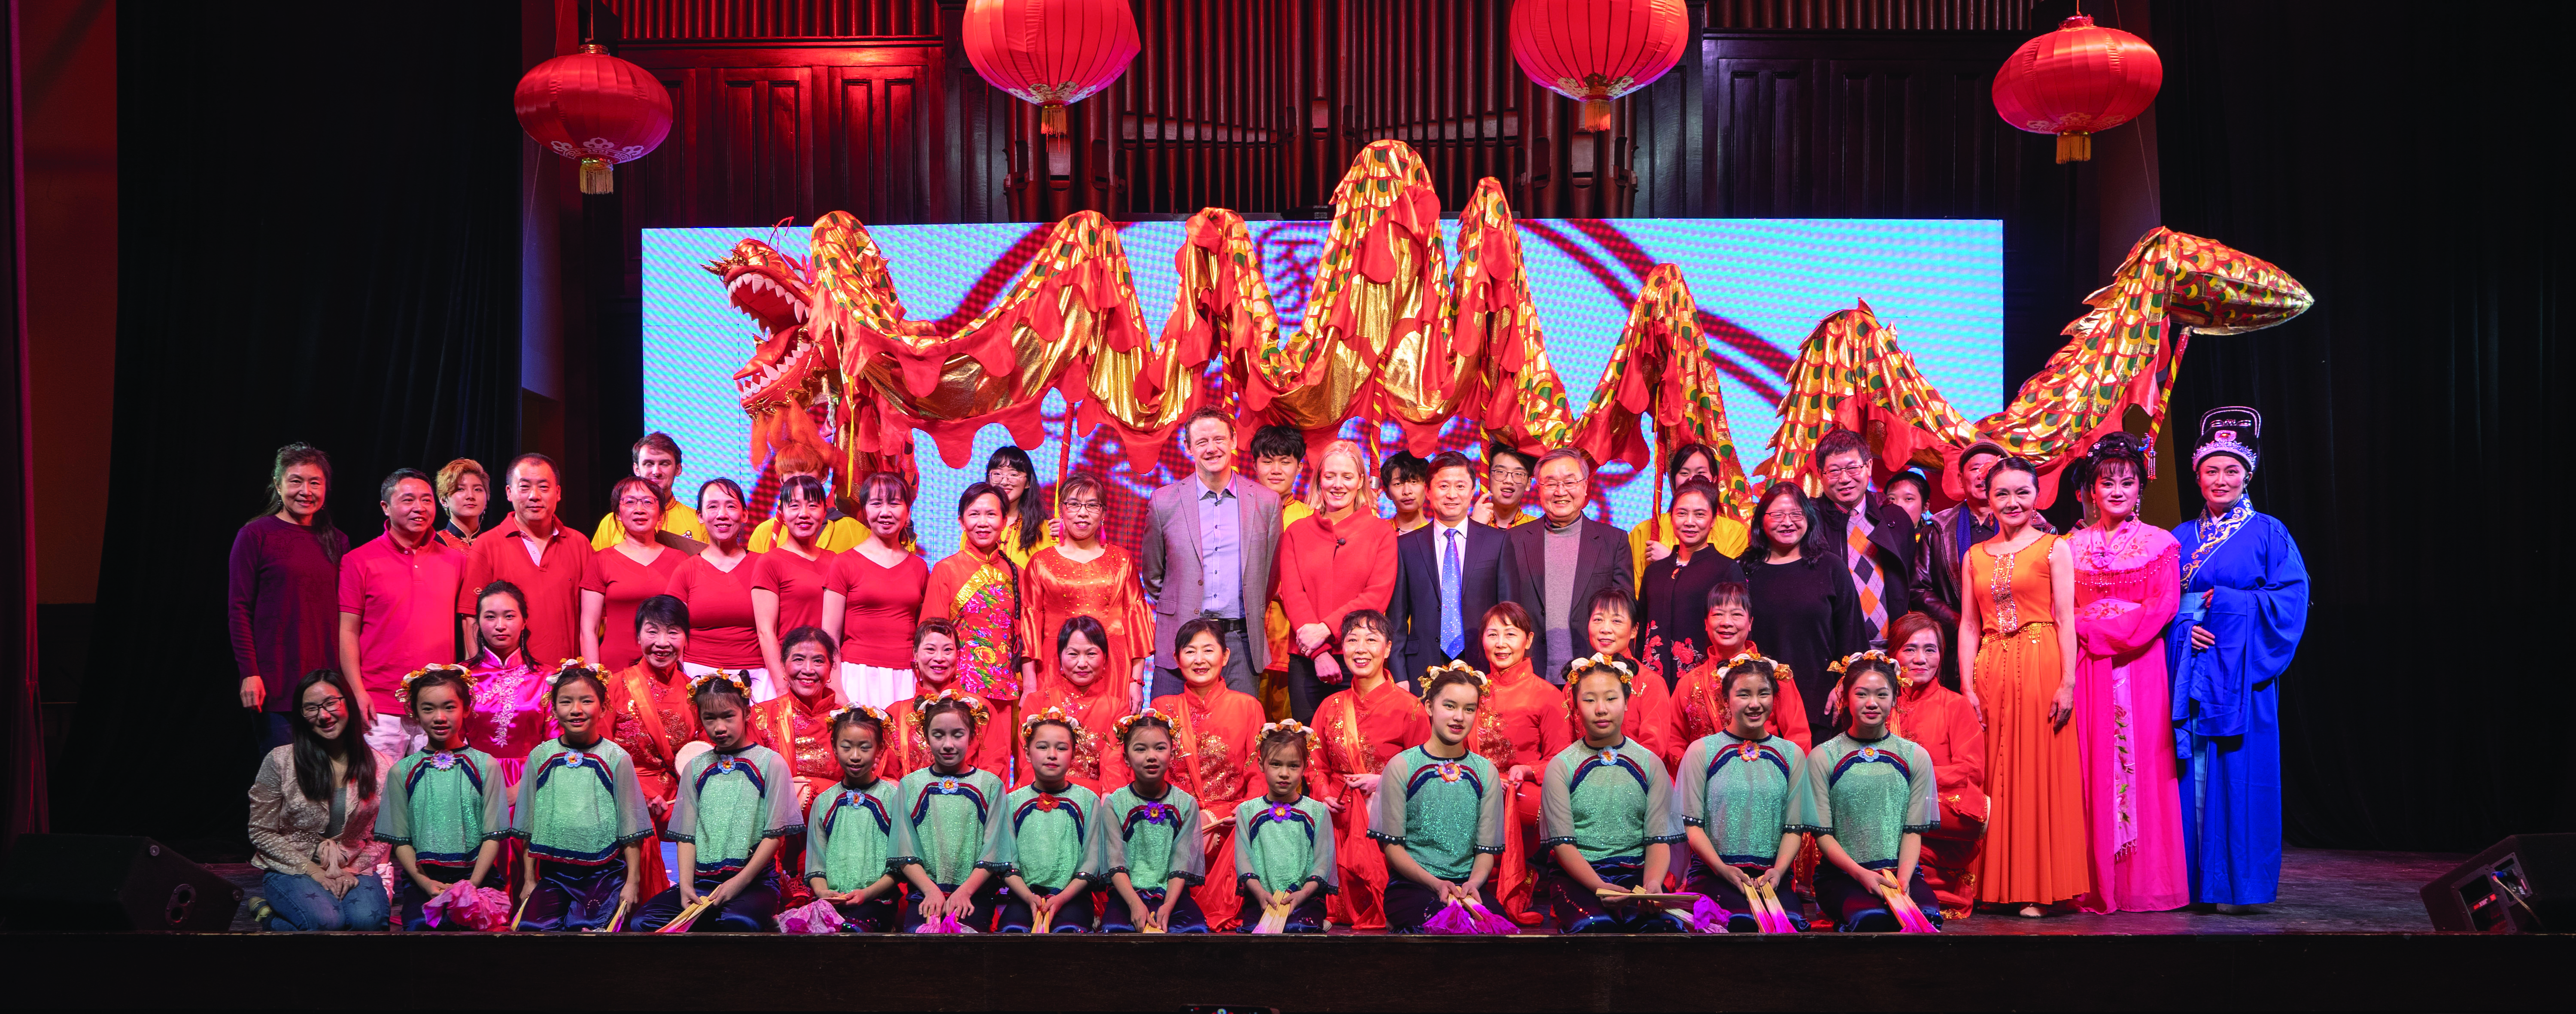 渥太华：“想唱就唱”声乐爱好者相聚一堂载歌载舞庆祝中国传统节日2019春节